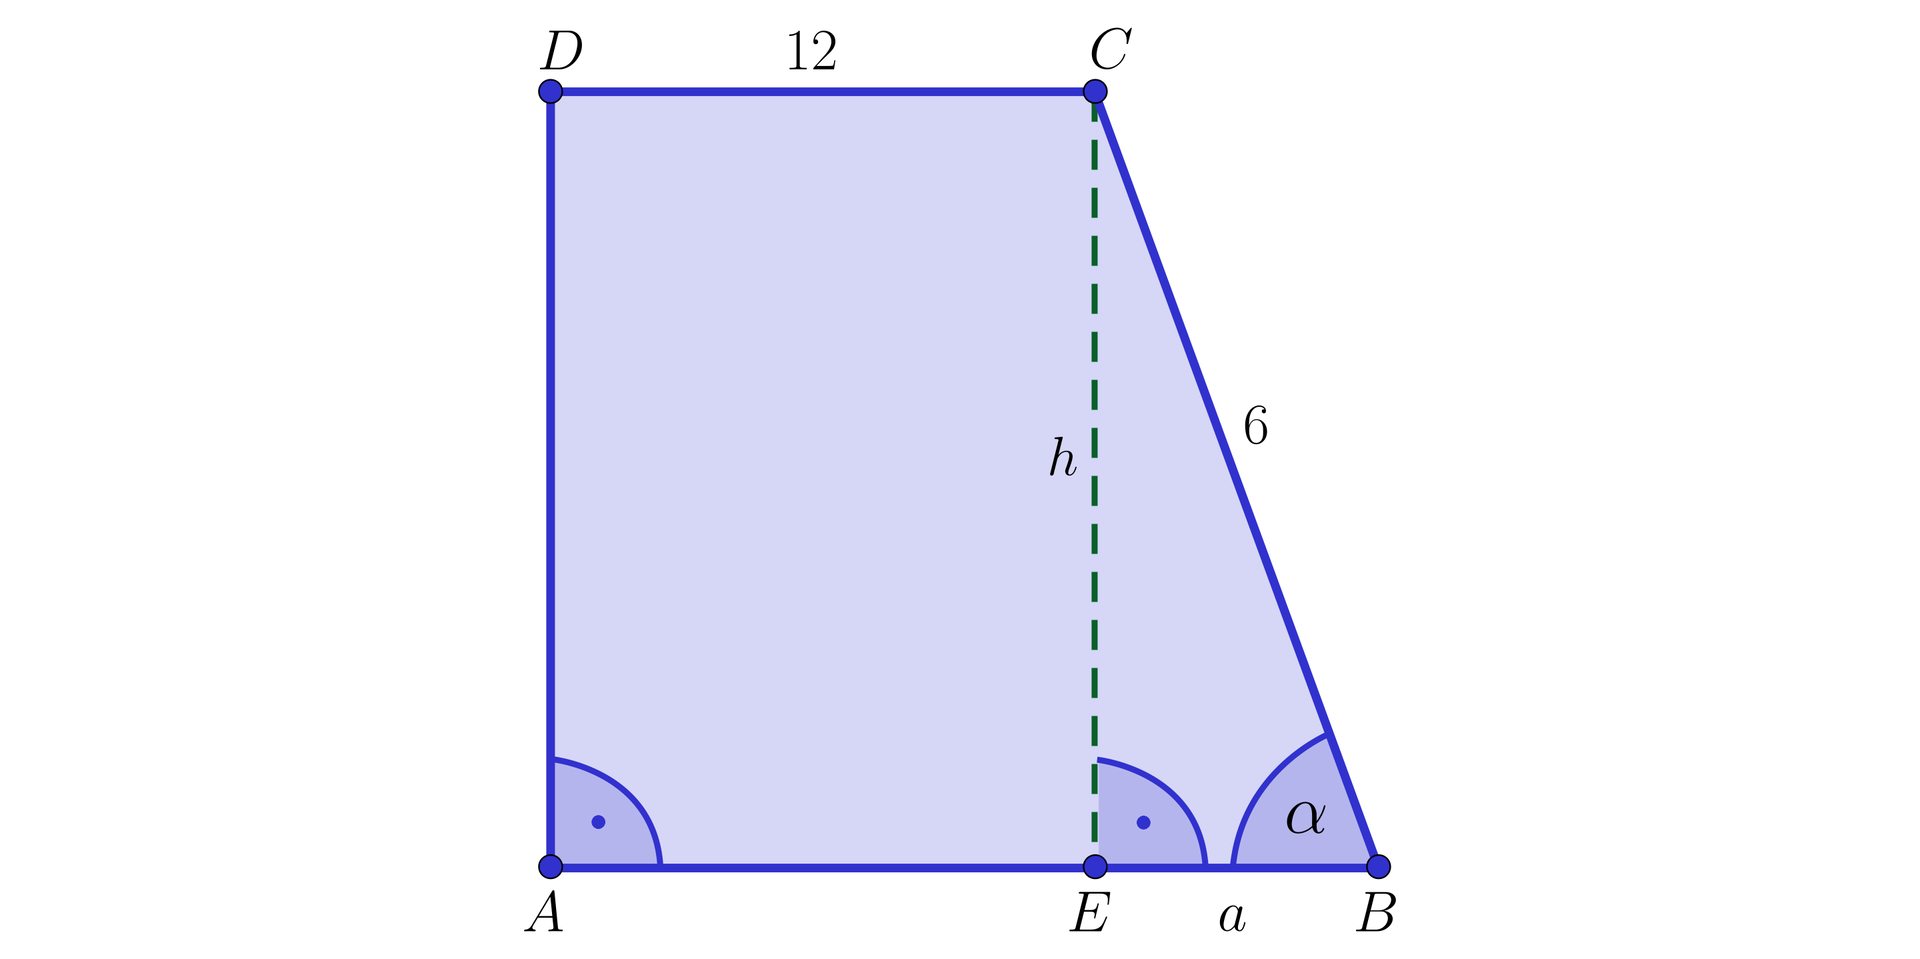 Ilustracja przedstawia trapez prostokątny ABCD o krótszej podstawie DC równej 12 i boku BC równym 6. Z wierzchołka C opuszczono wysokość h do punktu E dzielącego dłuższą podstawę na odcinki AE i EB. Odcinek EB ma wartość a. Kąt EBC ma wartość α.